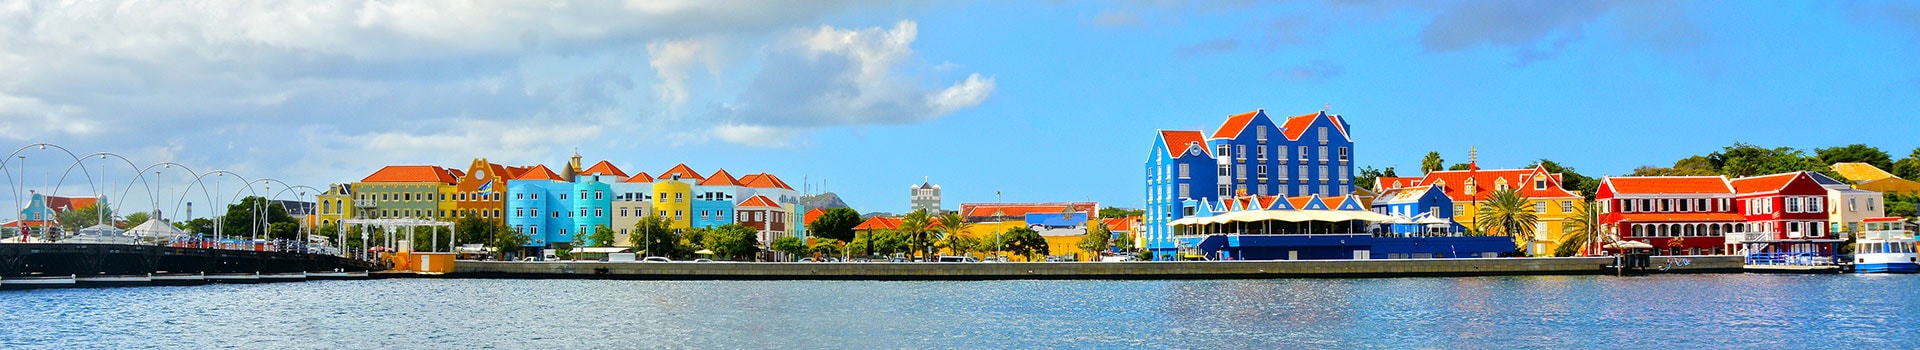 Rom - Willemstad